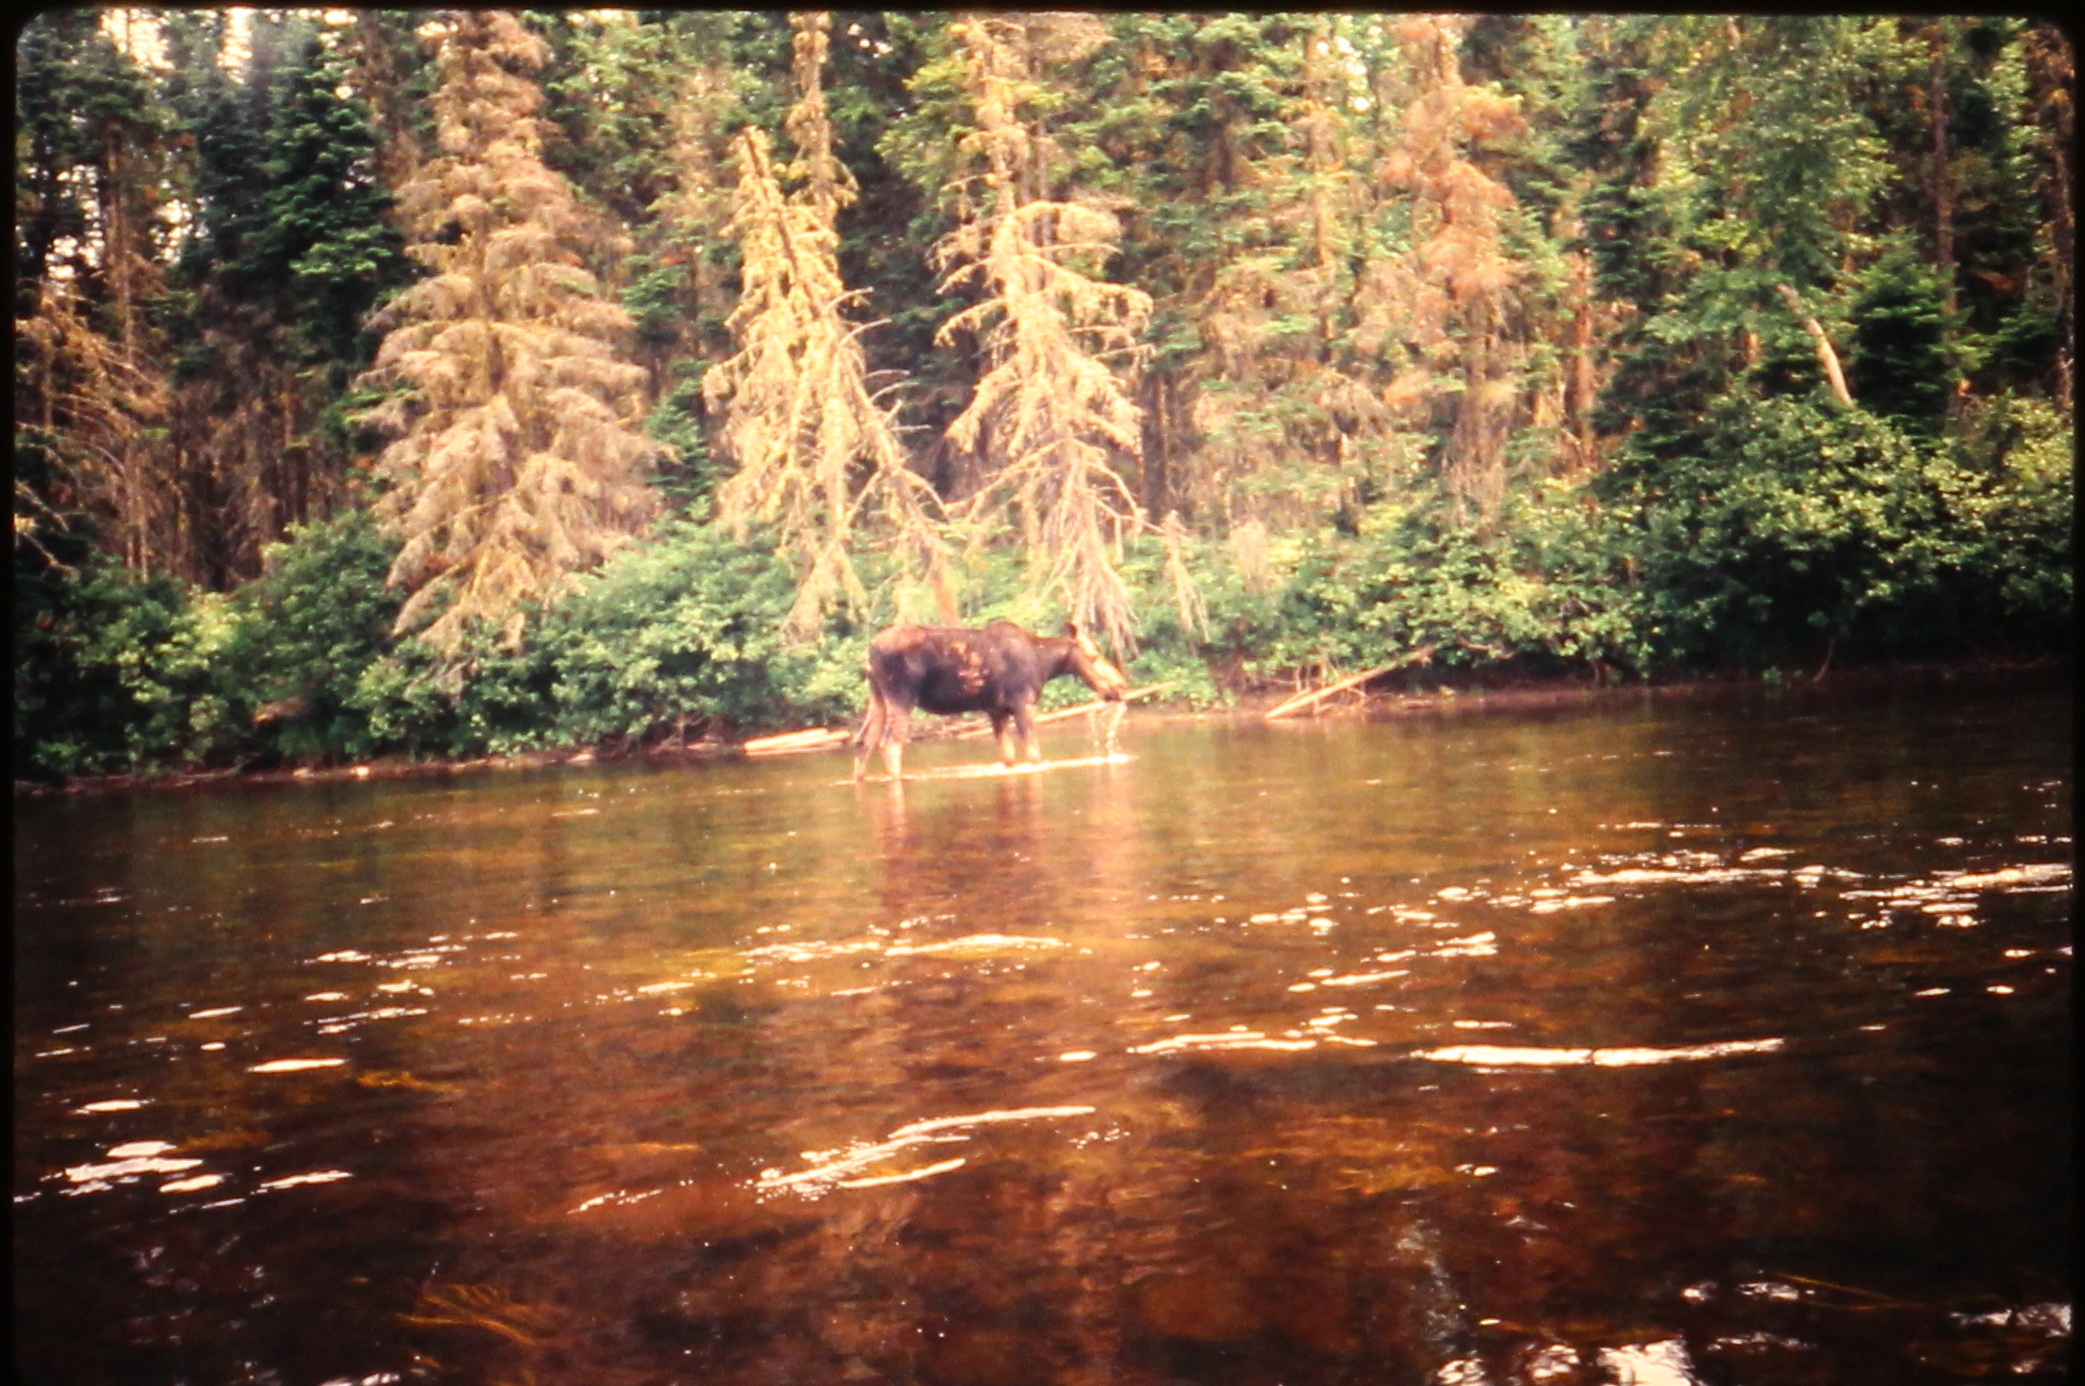 19890900.10 - USA ME xx xx PRiver - xx - Paddling Past Moose on the River - MB01T01B09S10.JPG